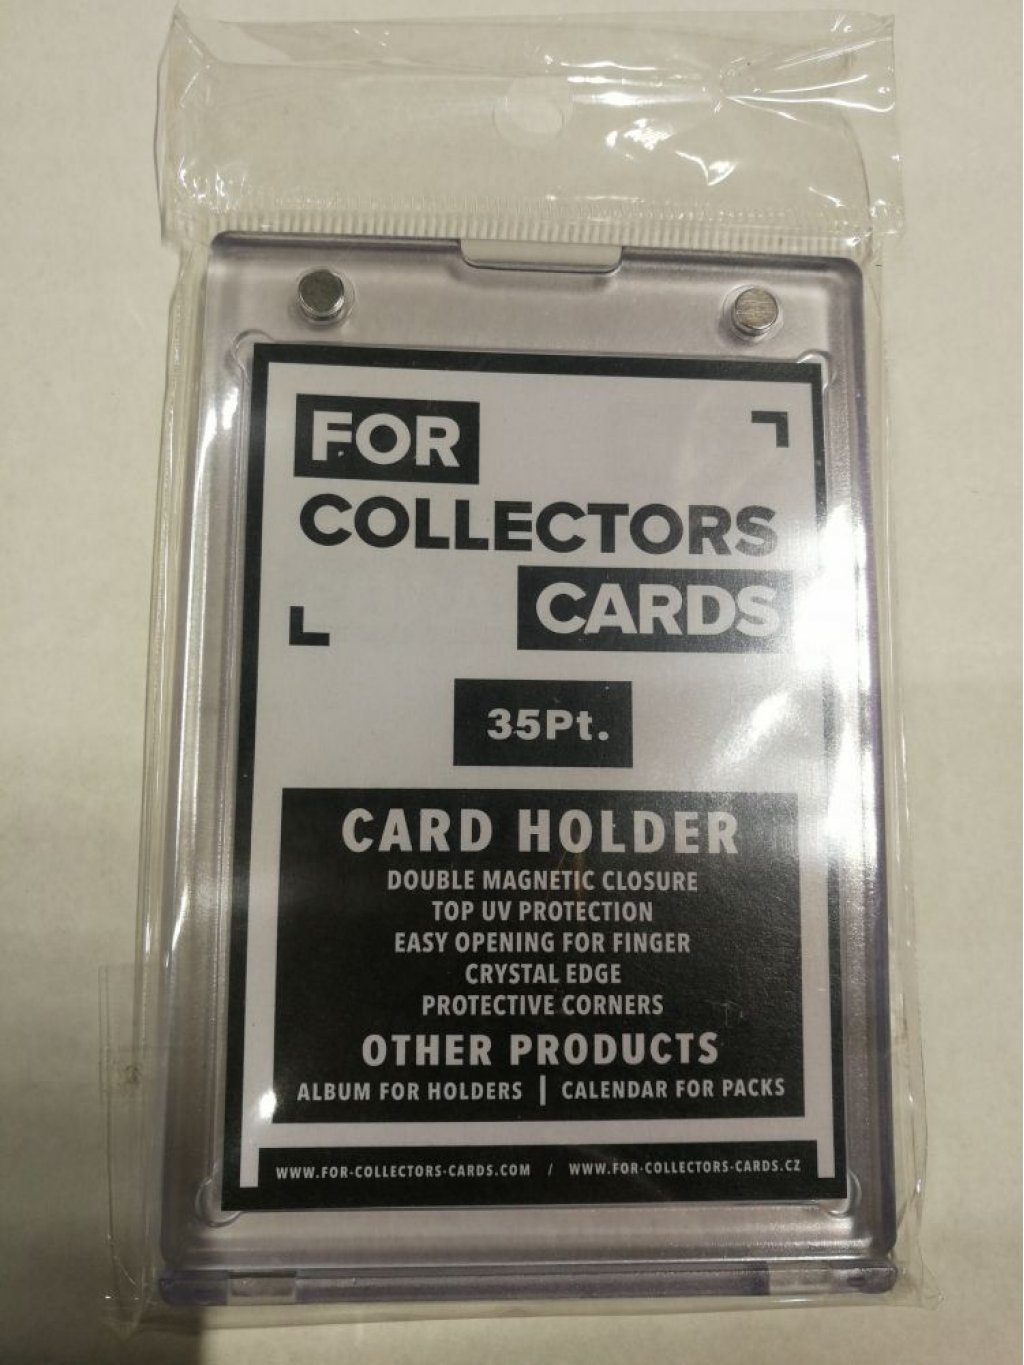 Card holder 35 Pt